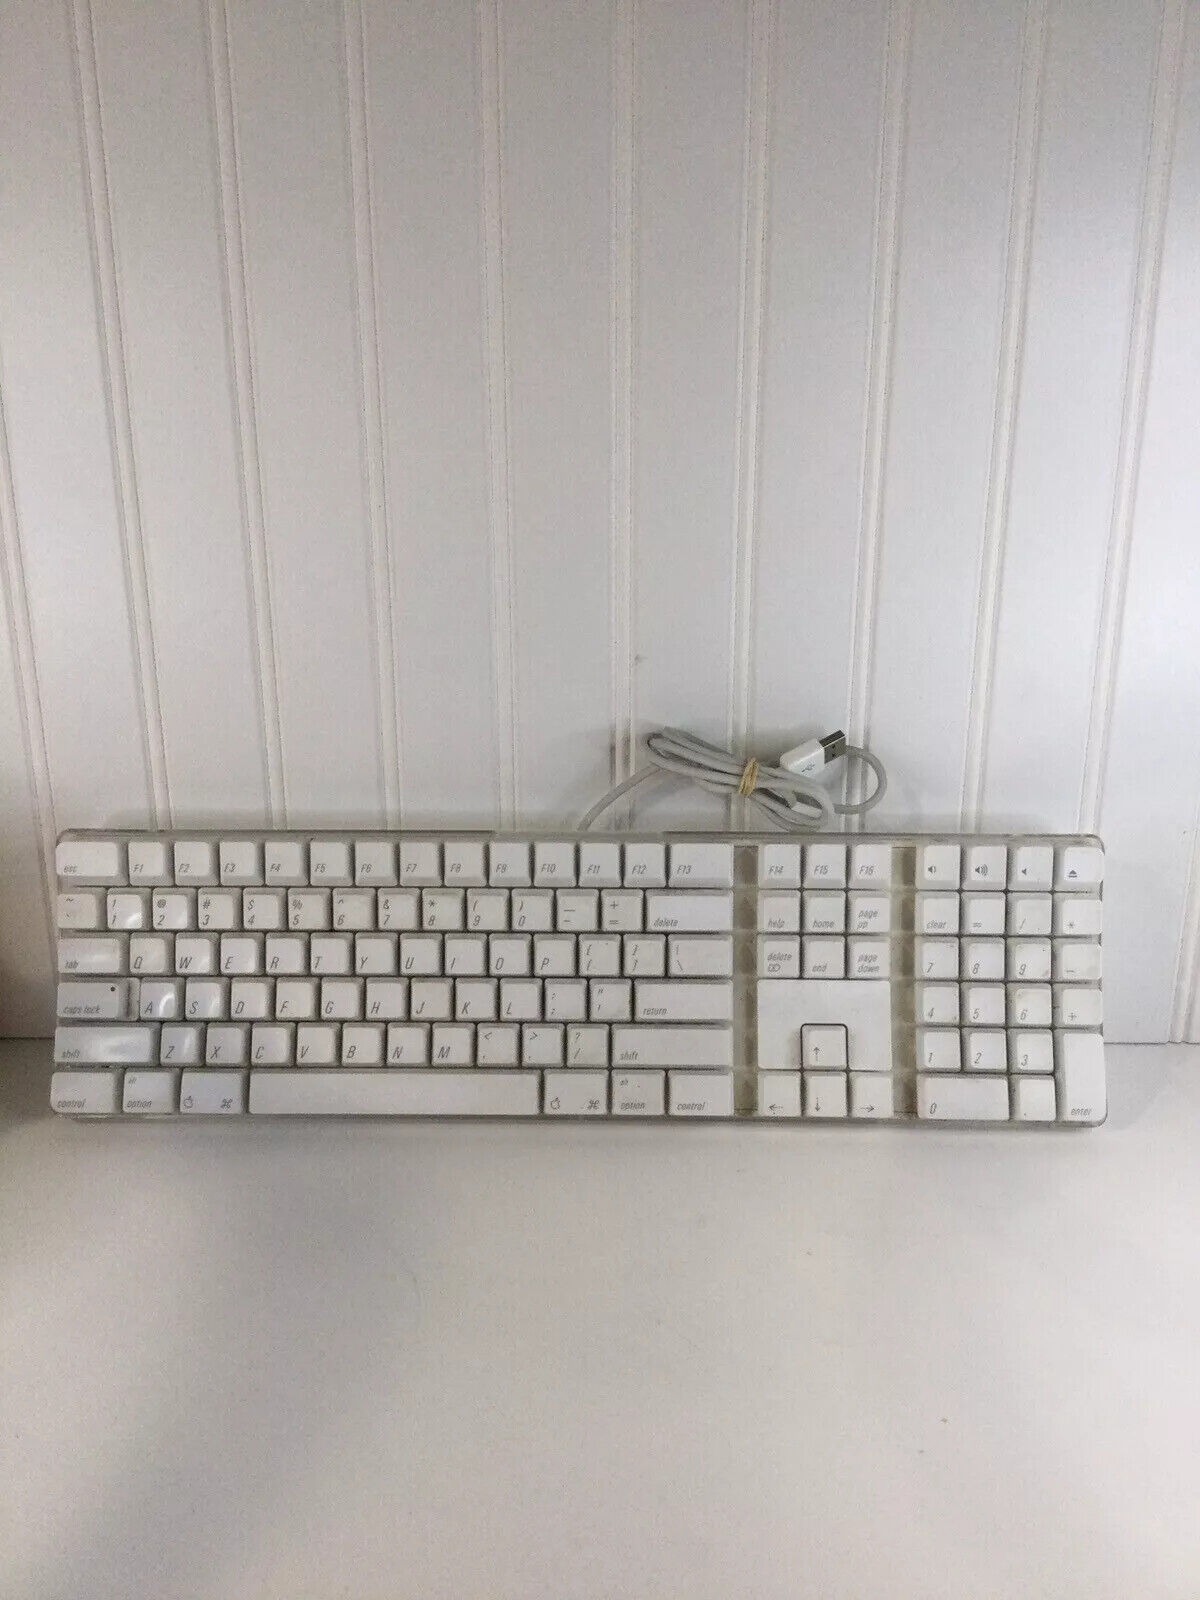 Genuine Apple Mac iMac G4 G5 Wired Full Size Keyboard A1048 White w/ 2 USB ports